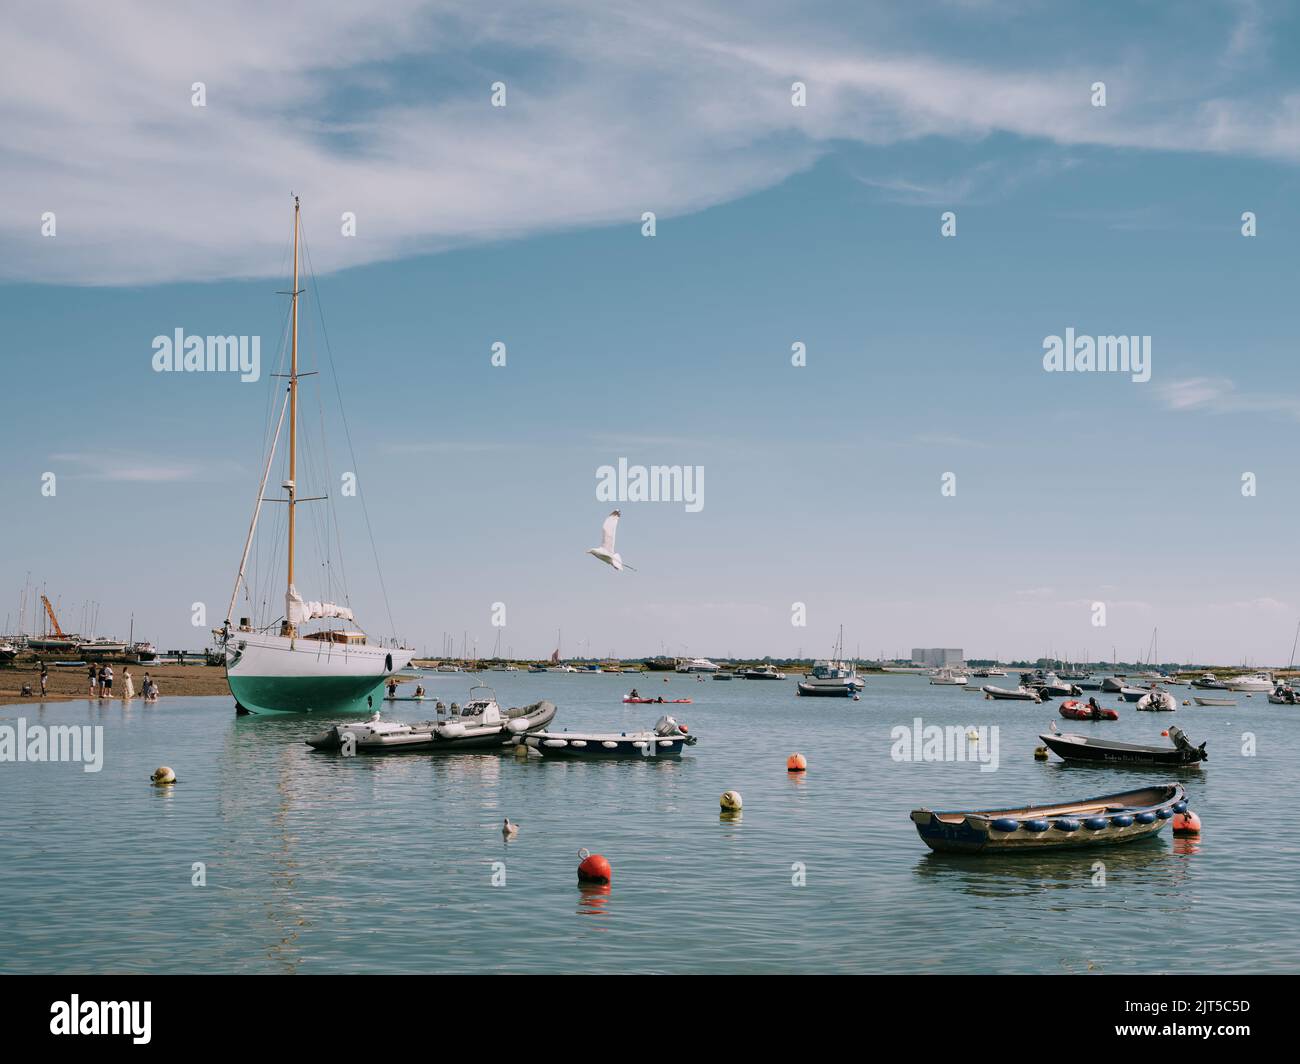 Le paysage d'été et les bateaux à West Mersea Harbor, Mersea Island, Essex Angleterre Royaume-Uni Banque D'Images